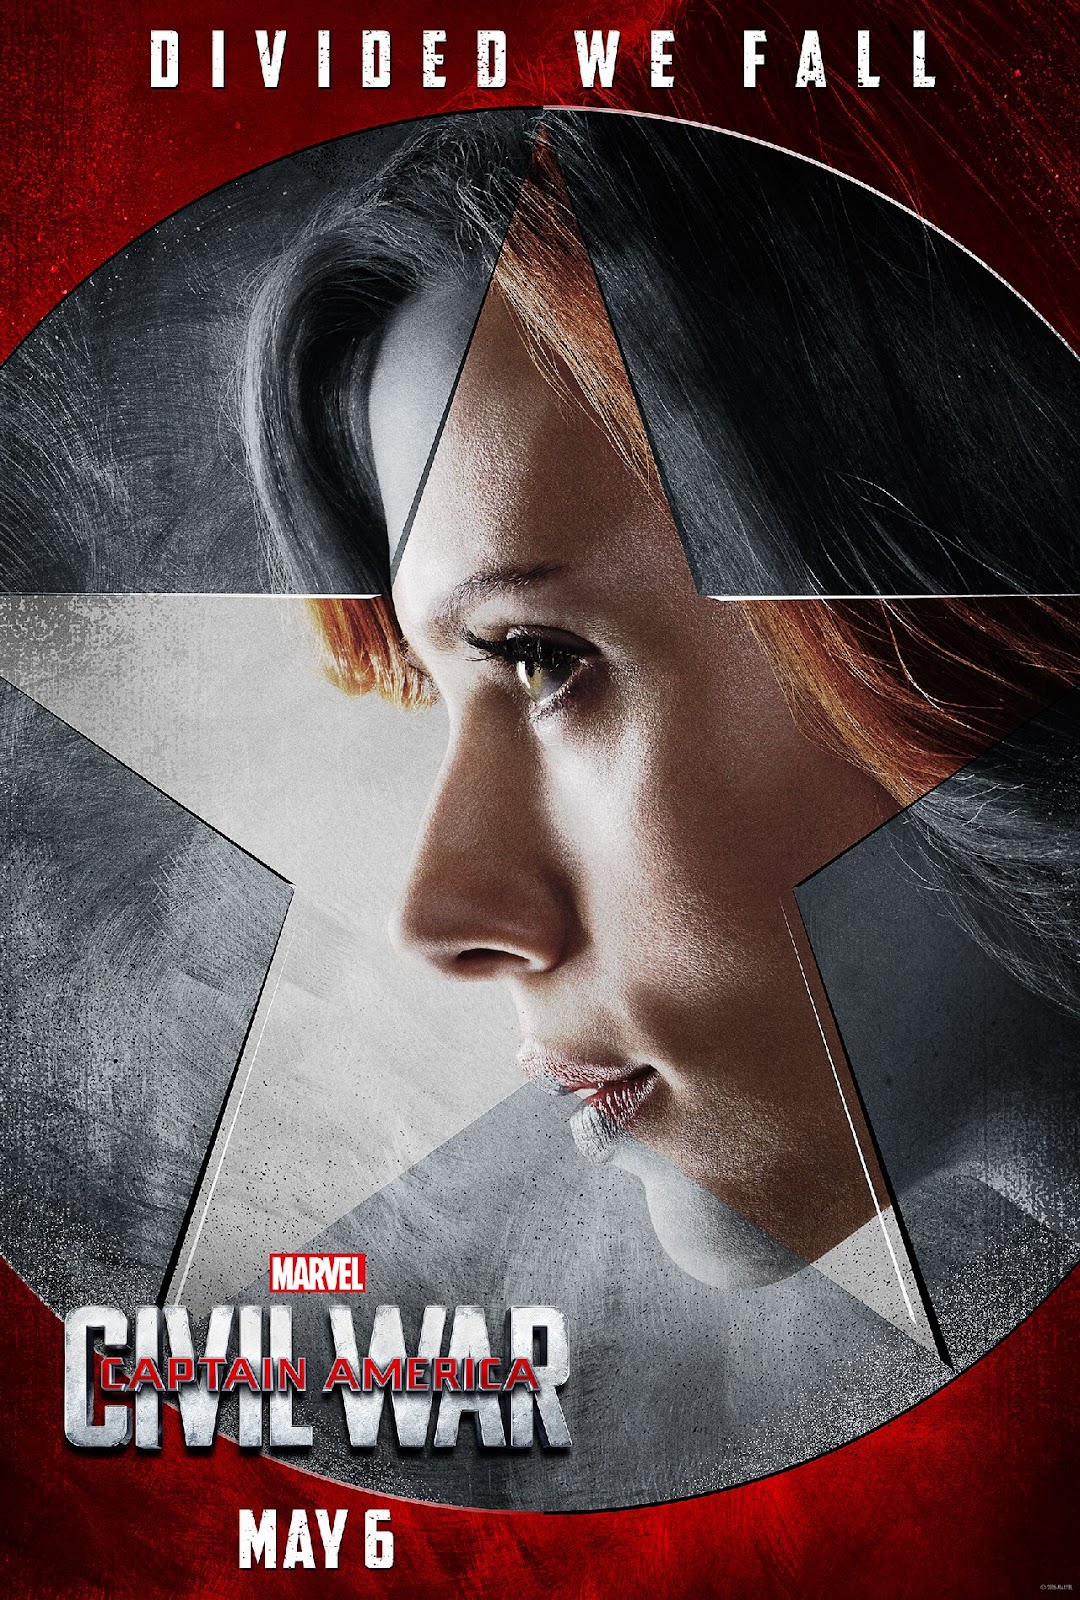 ｃｉａ こちら映画中央情報局です Captain America マーベルのヒーロー大集合映画 キャプテン アメリカ シビル ウォー が アイアンマン軍のメンバーのキャラクター ポスターをリリース